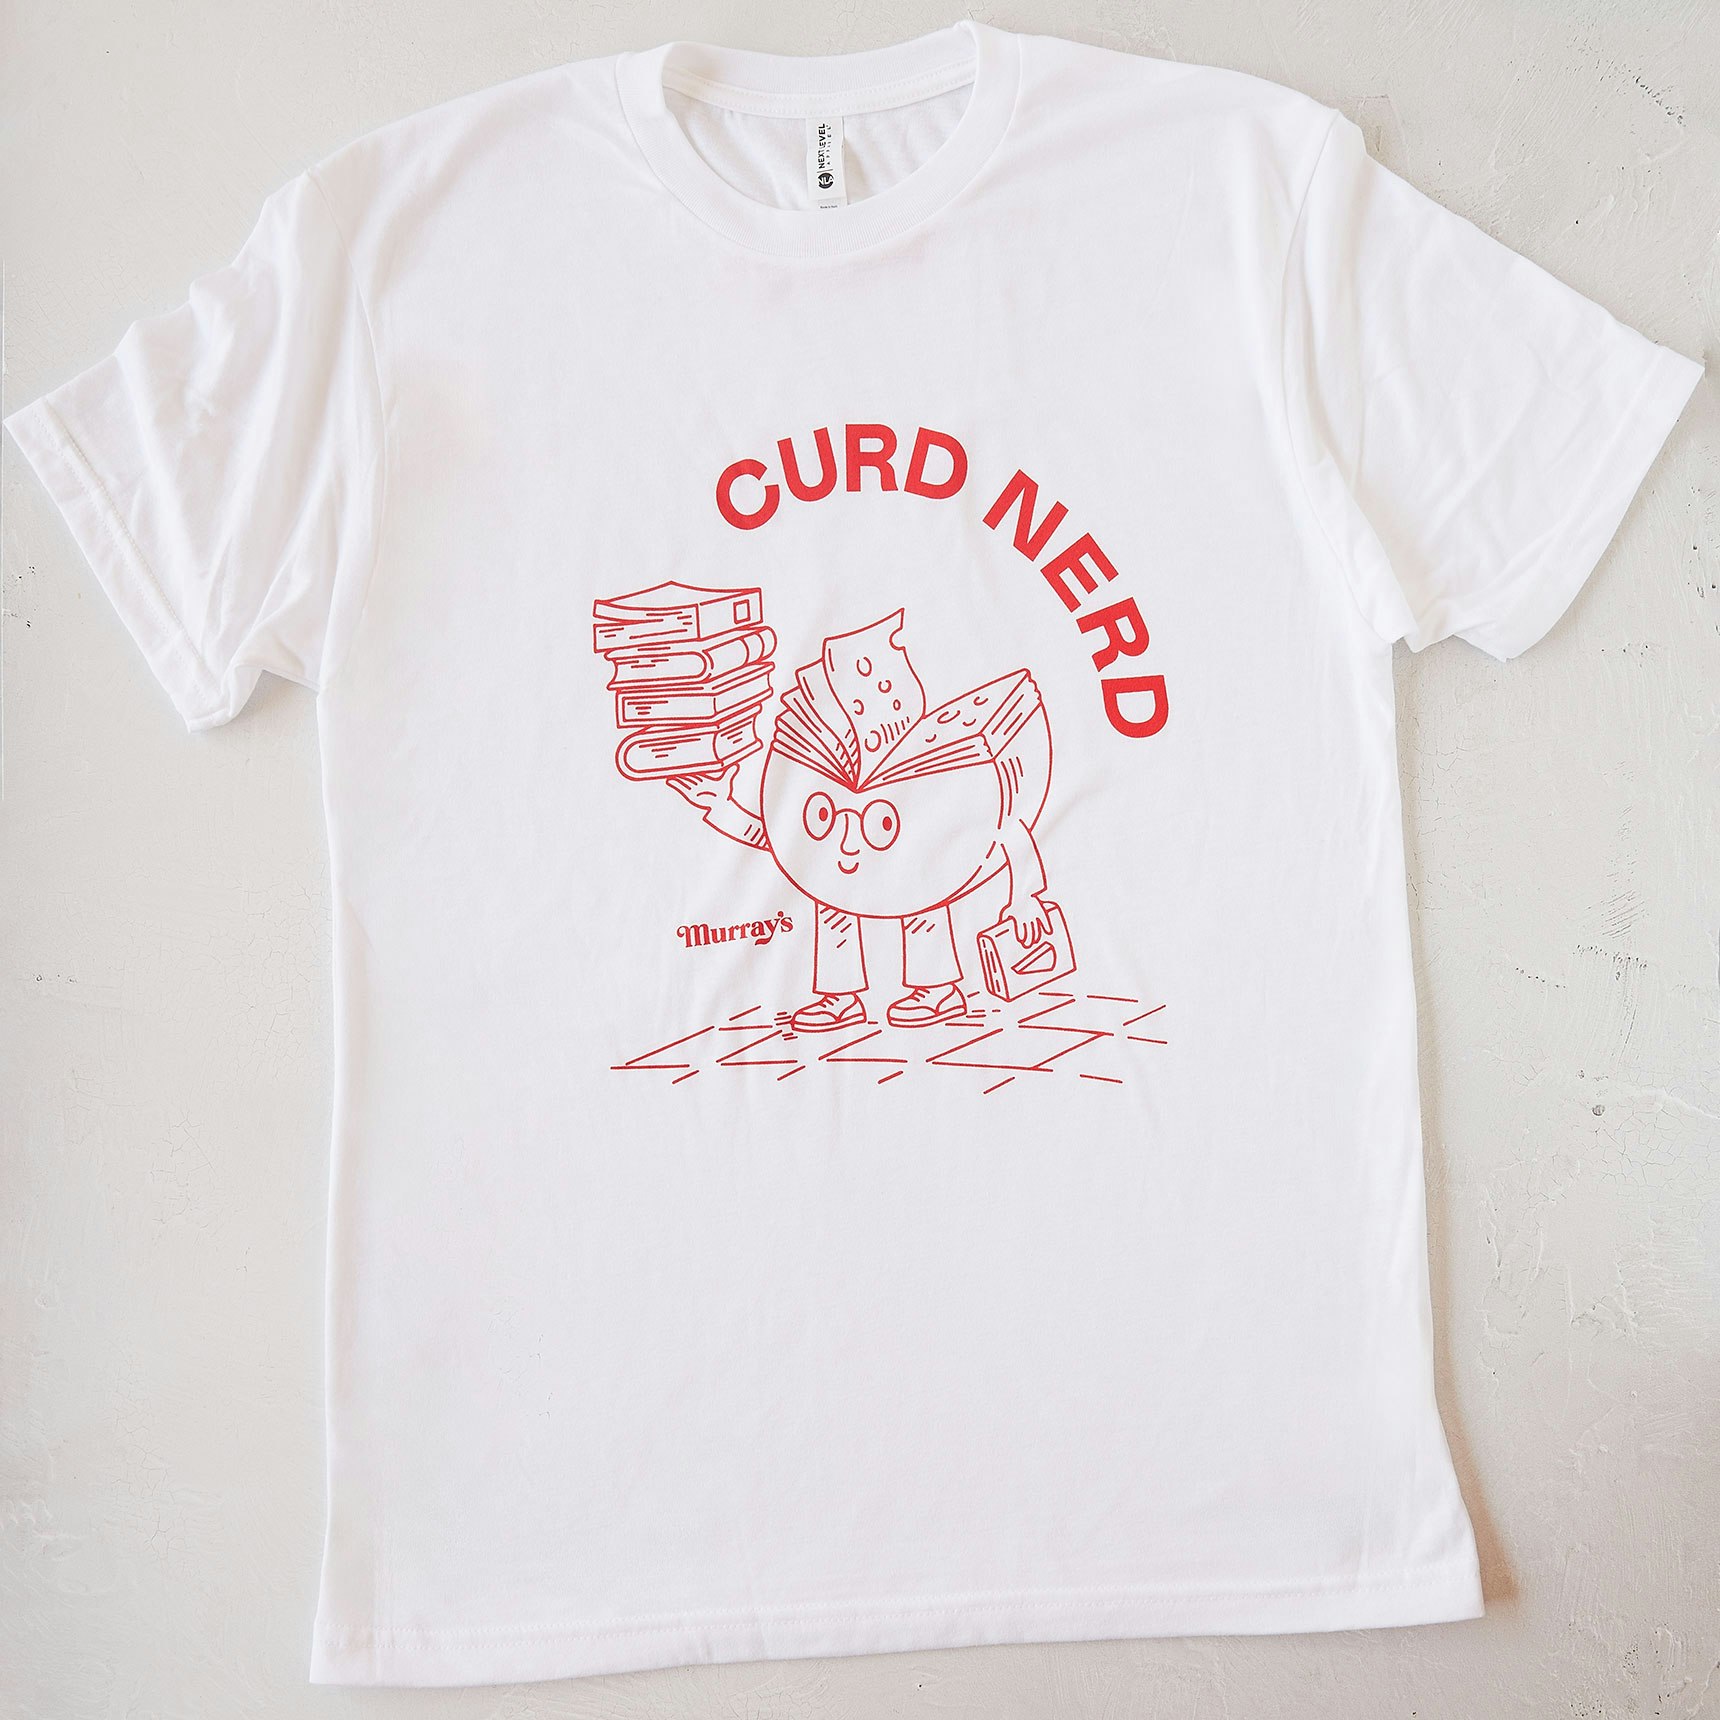 Murray's Curd Nerd T-Shirt